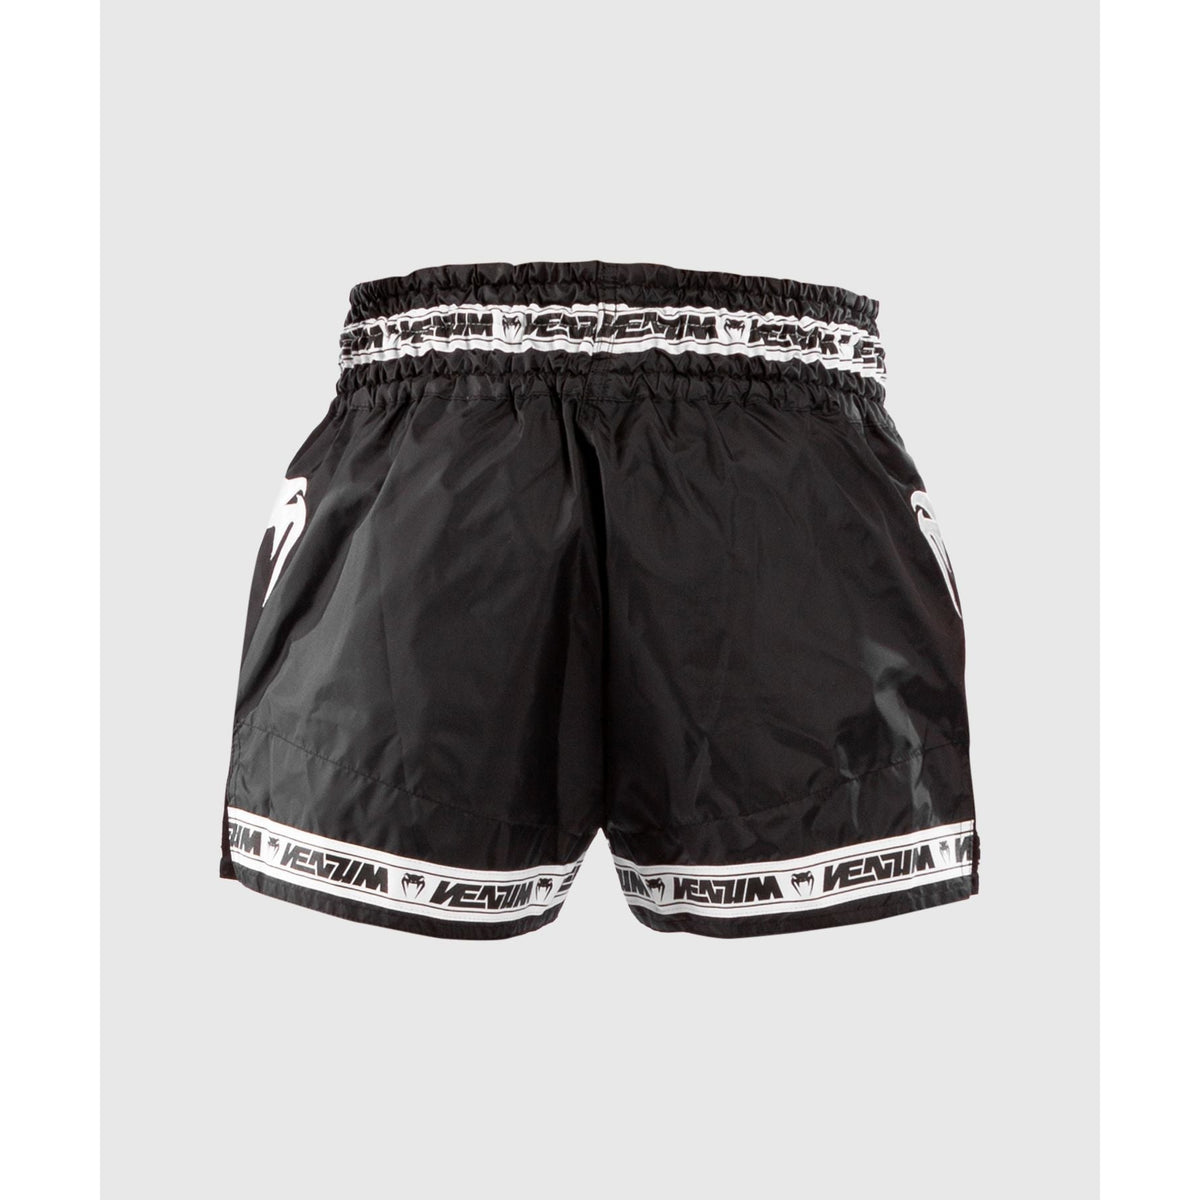 Parachute Muay Thai Shorts - Venum